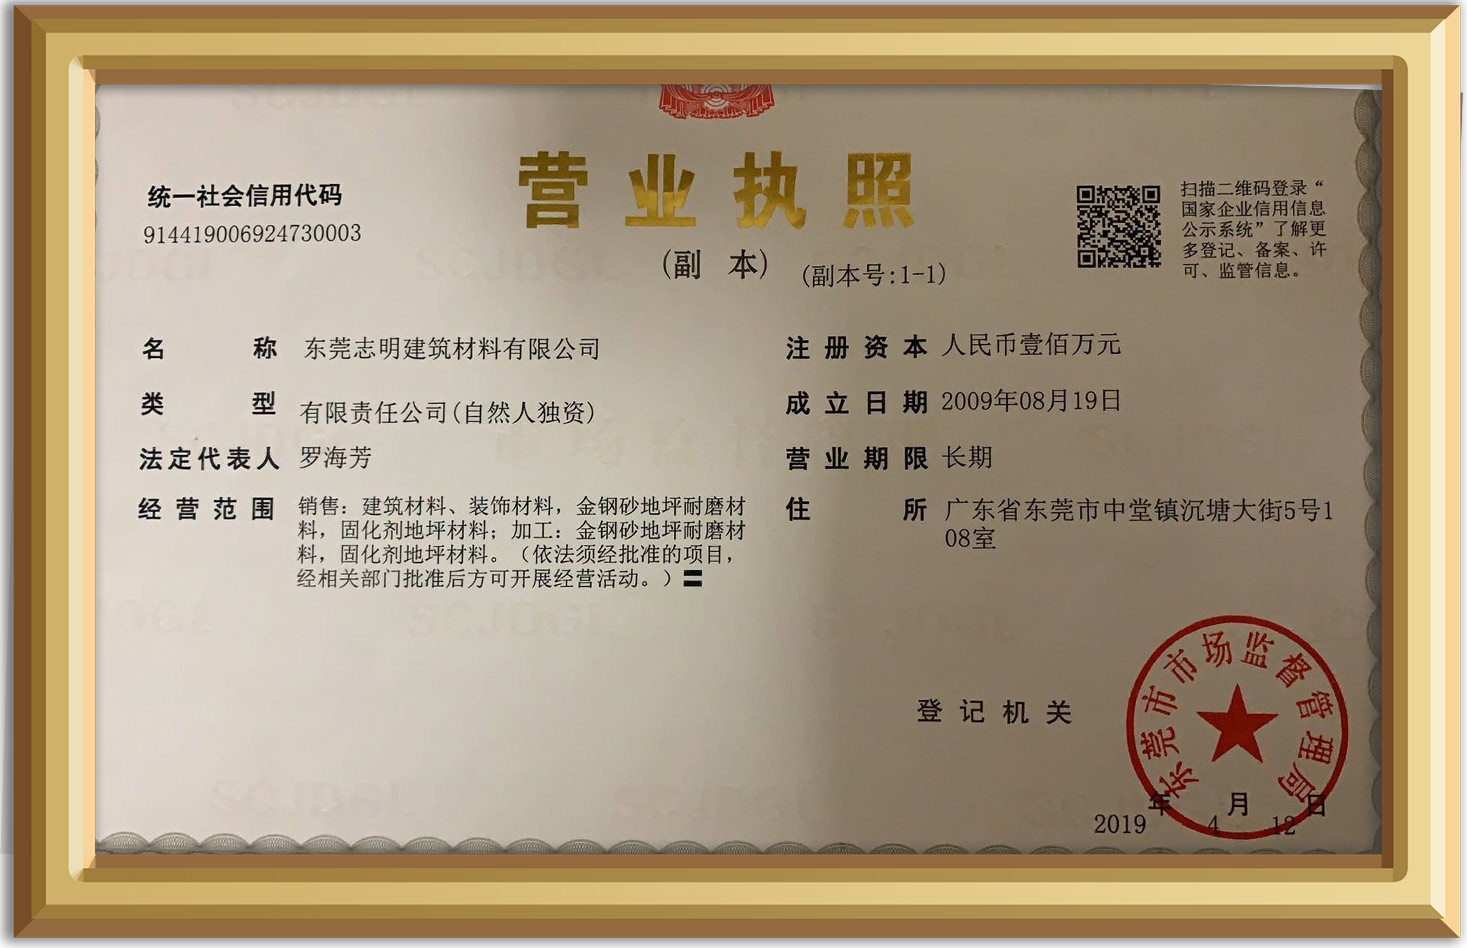 必赢bwin线路检测中心(中国)股份有限公司_image6291